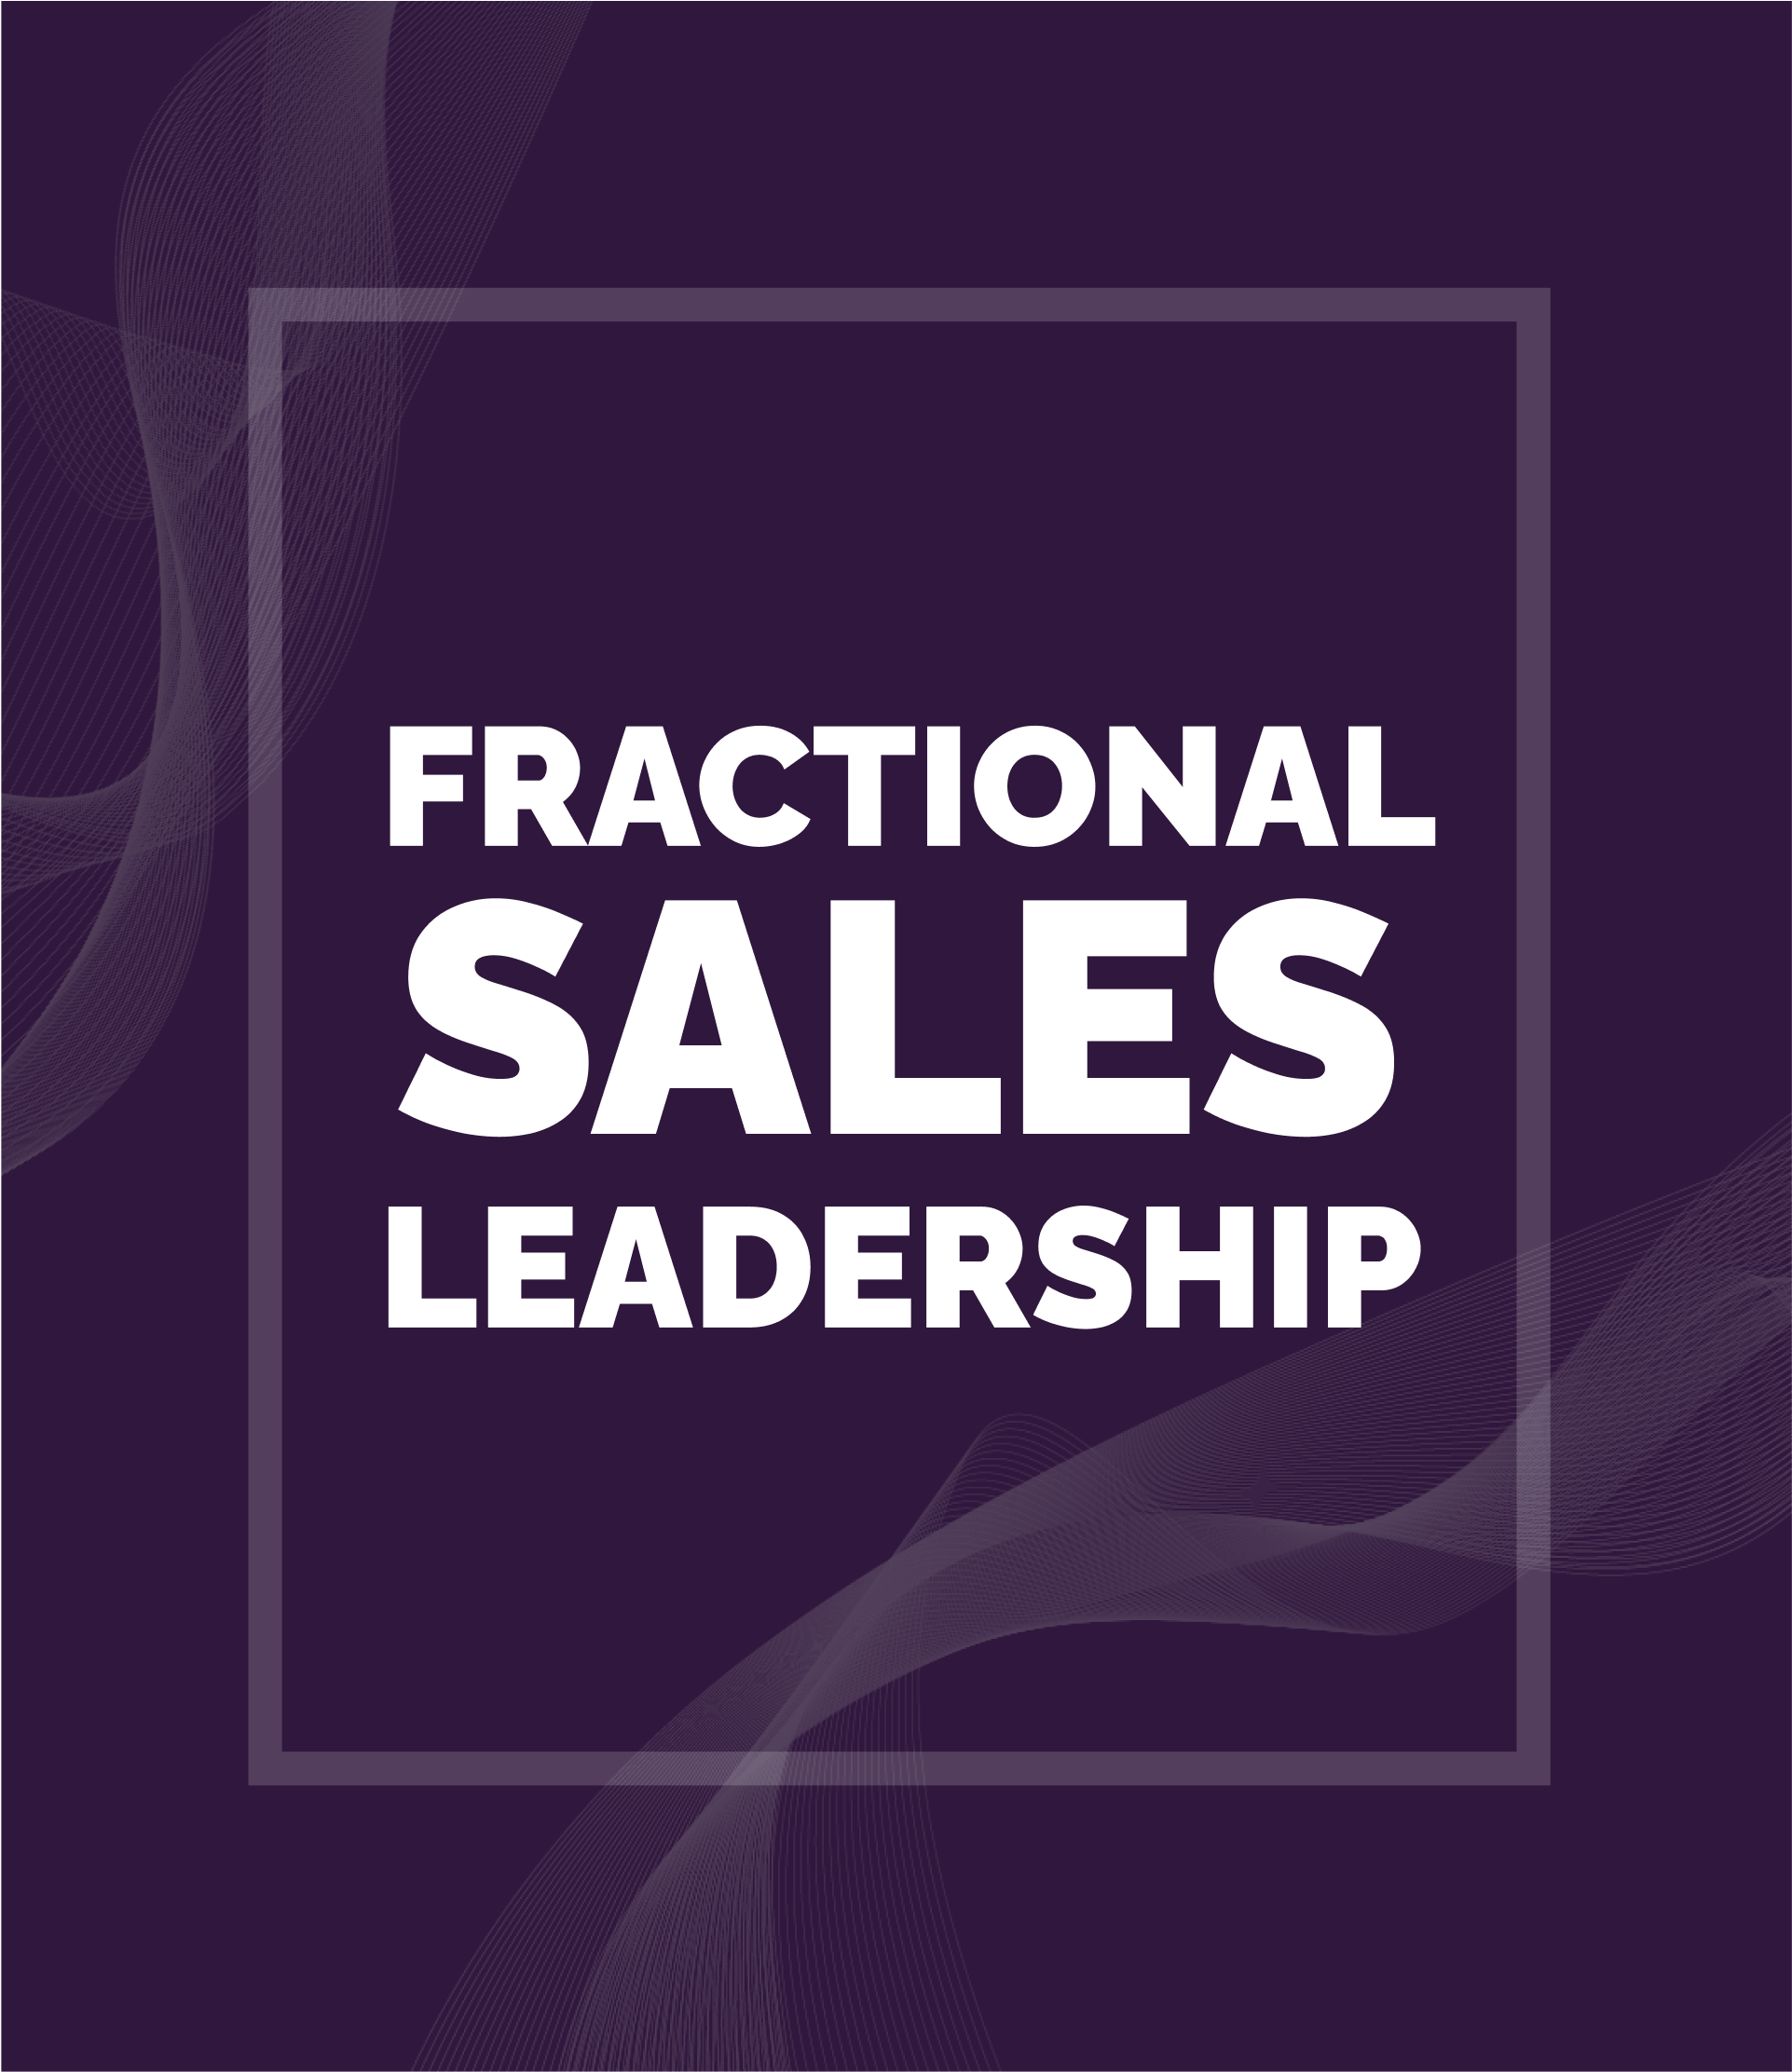 Fractional sales leadership